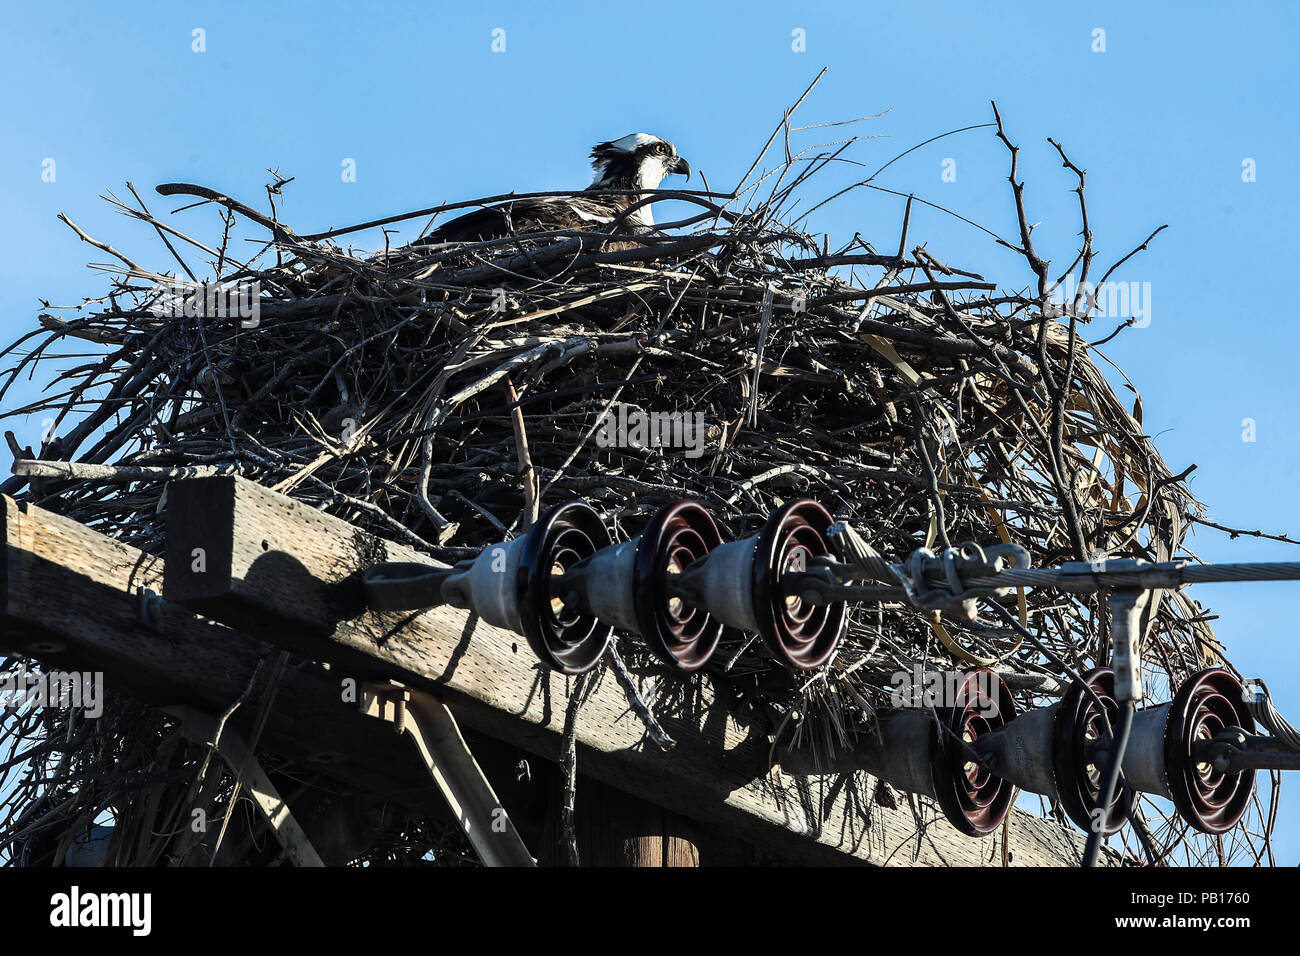 Aguila pescadora en su nido sobre un poste de luz.  especies del desierto sonorense por la carretera a Bahia de Kino y  San Nicolas  en Sonora Mexico. Stock Photo